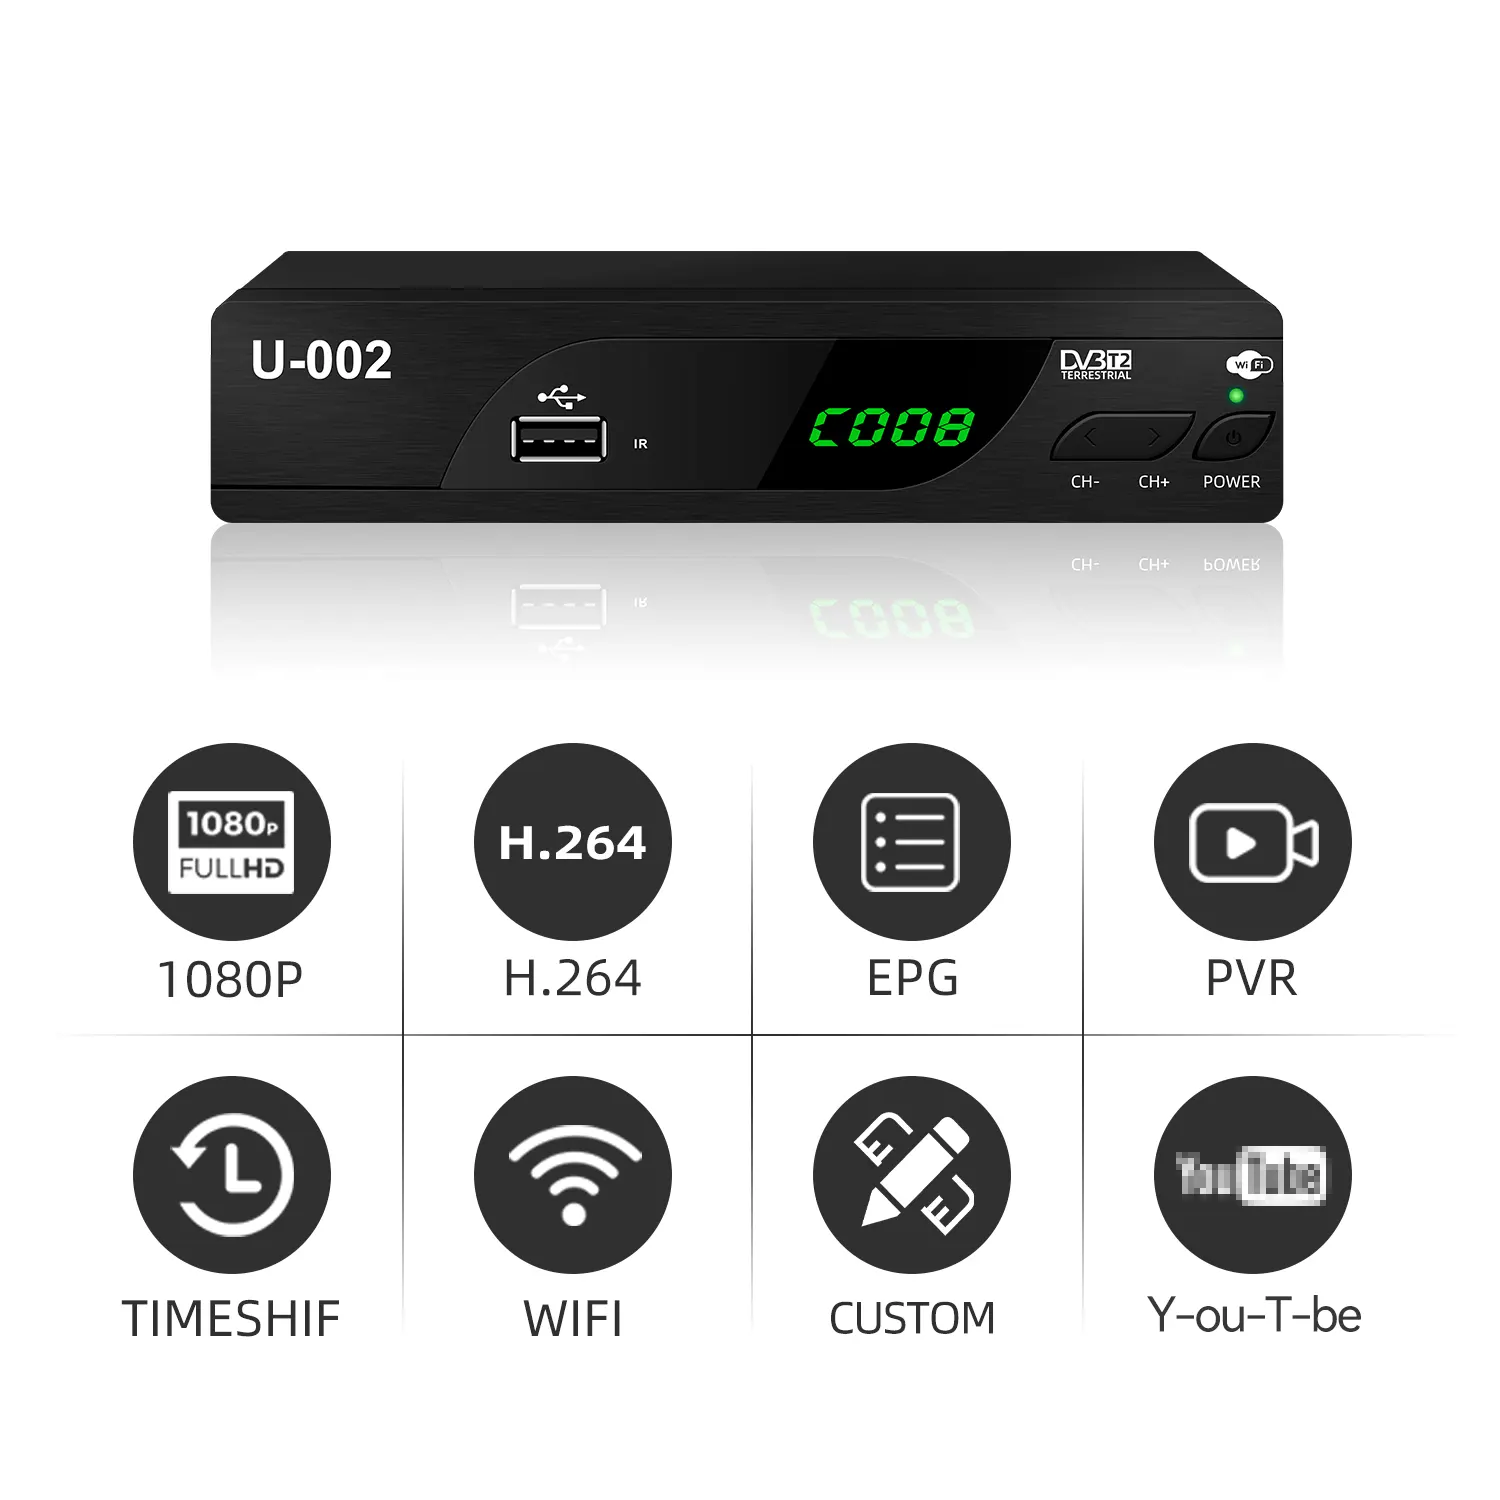 Fiable y barato HD H.264, receptor de TV de la parte superior del decodificador sintonizador digital TDT DVB T2, decodificador de señal libre para España